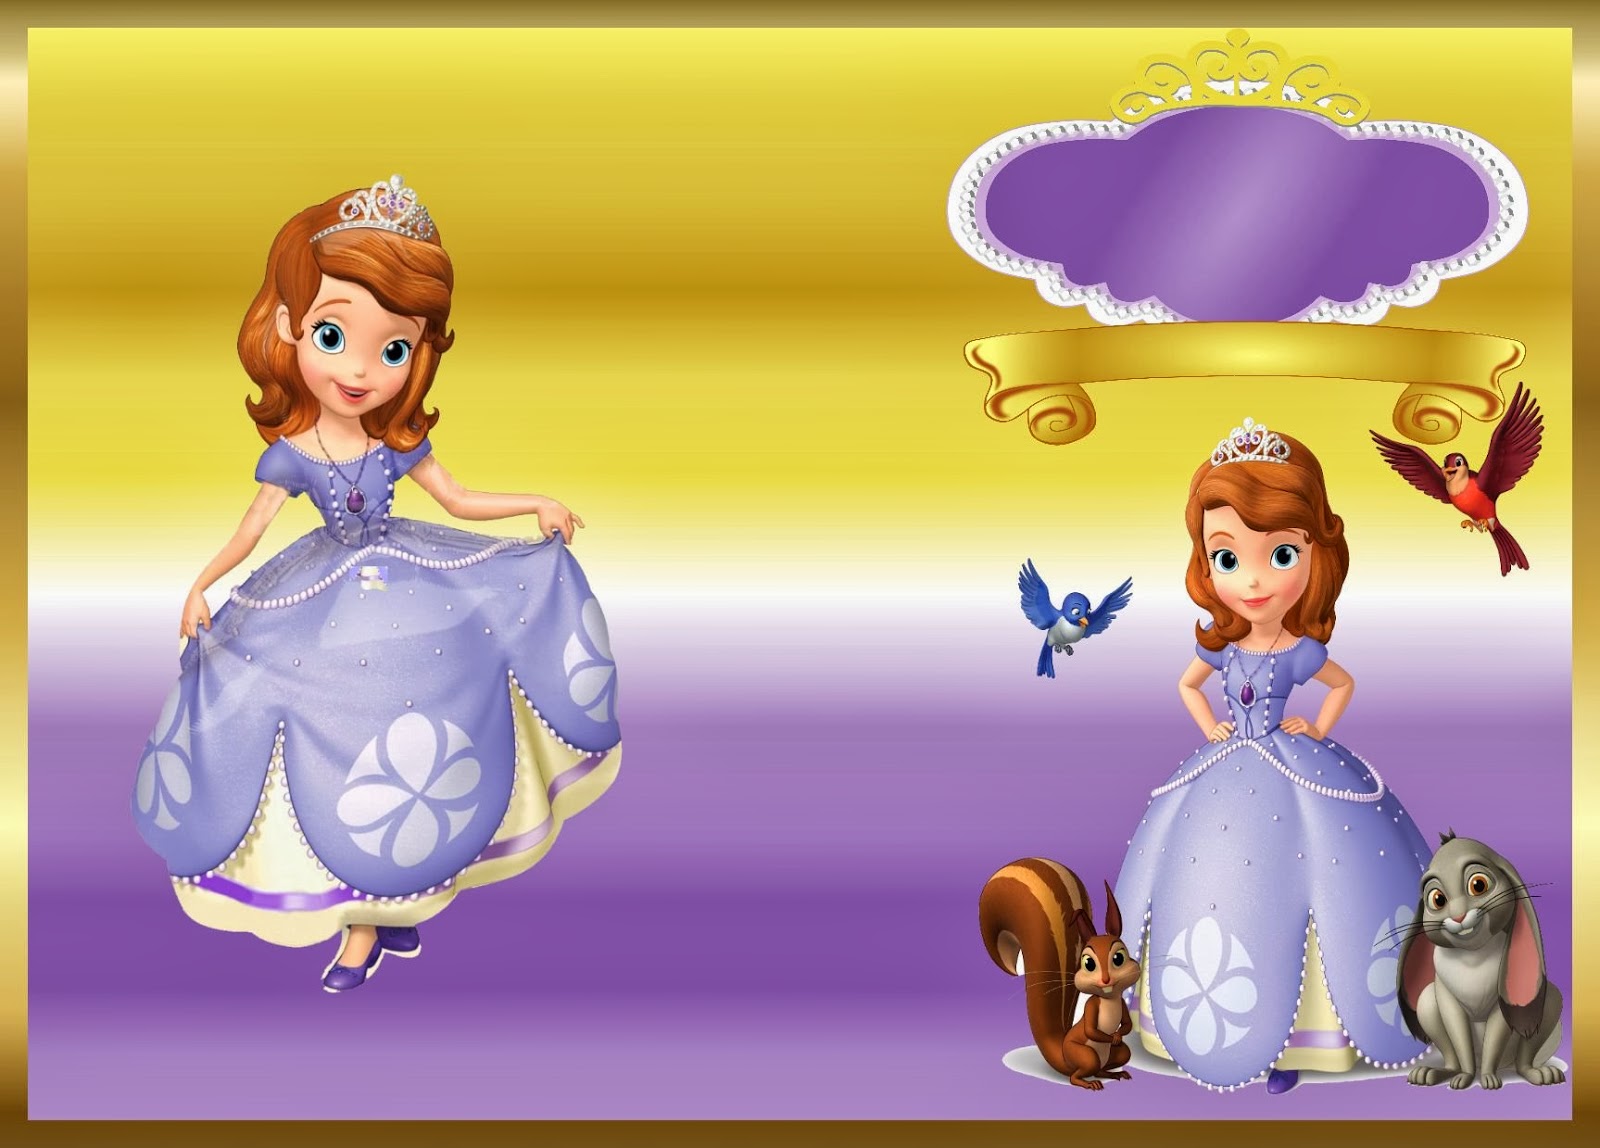 Livrinho para Colorir Princesa Sofia Pagina-1 - Fazendo a Nossa Festa   Princesa sofia para colorir, Princesa sofia, Desenho da princesa sofia